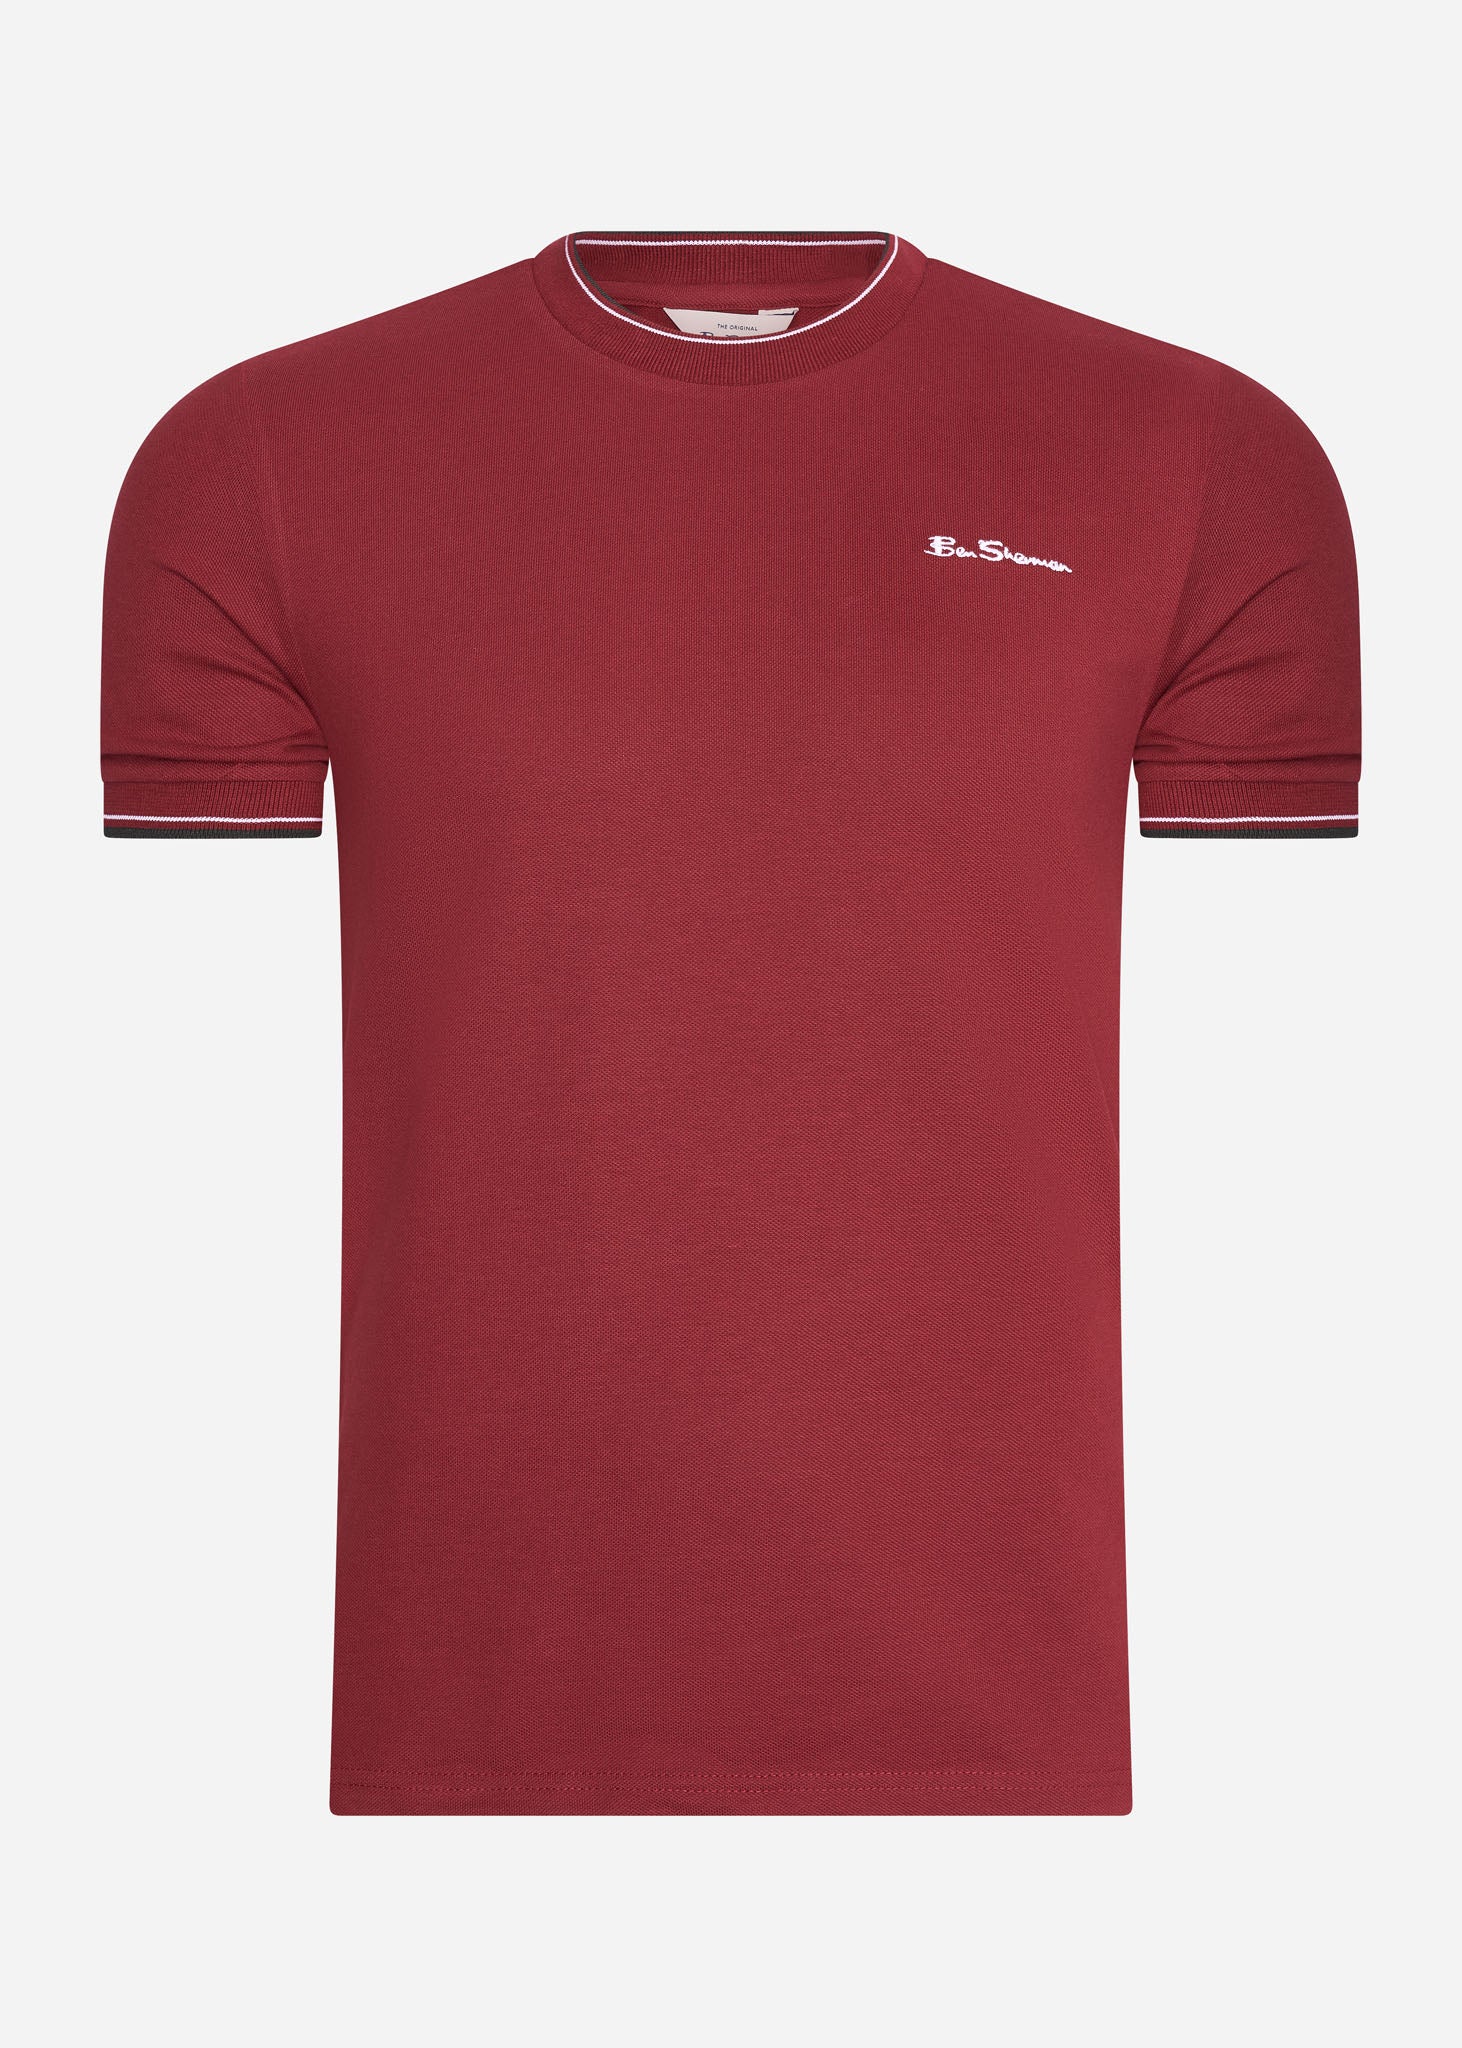 Ben Sherman T-shirts  Pique tee - red 